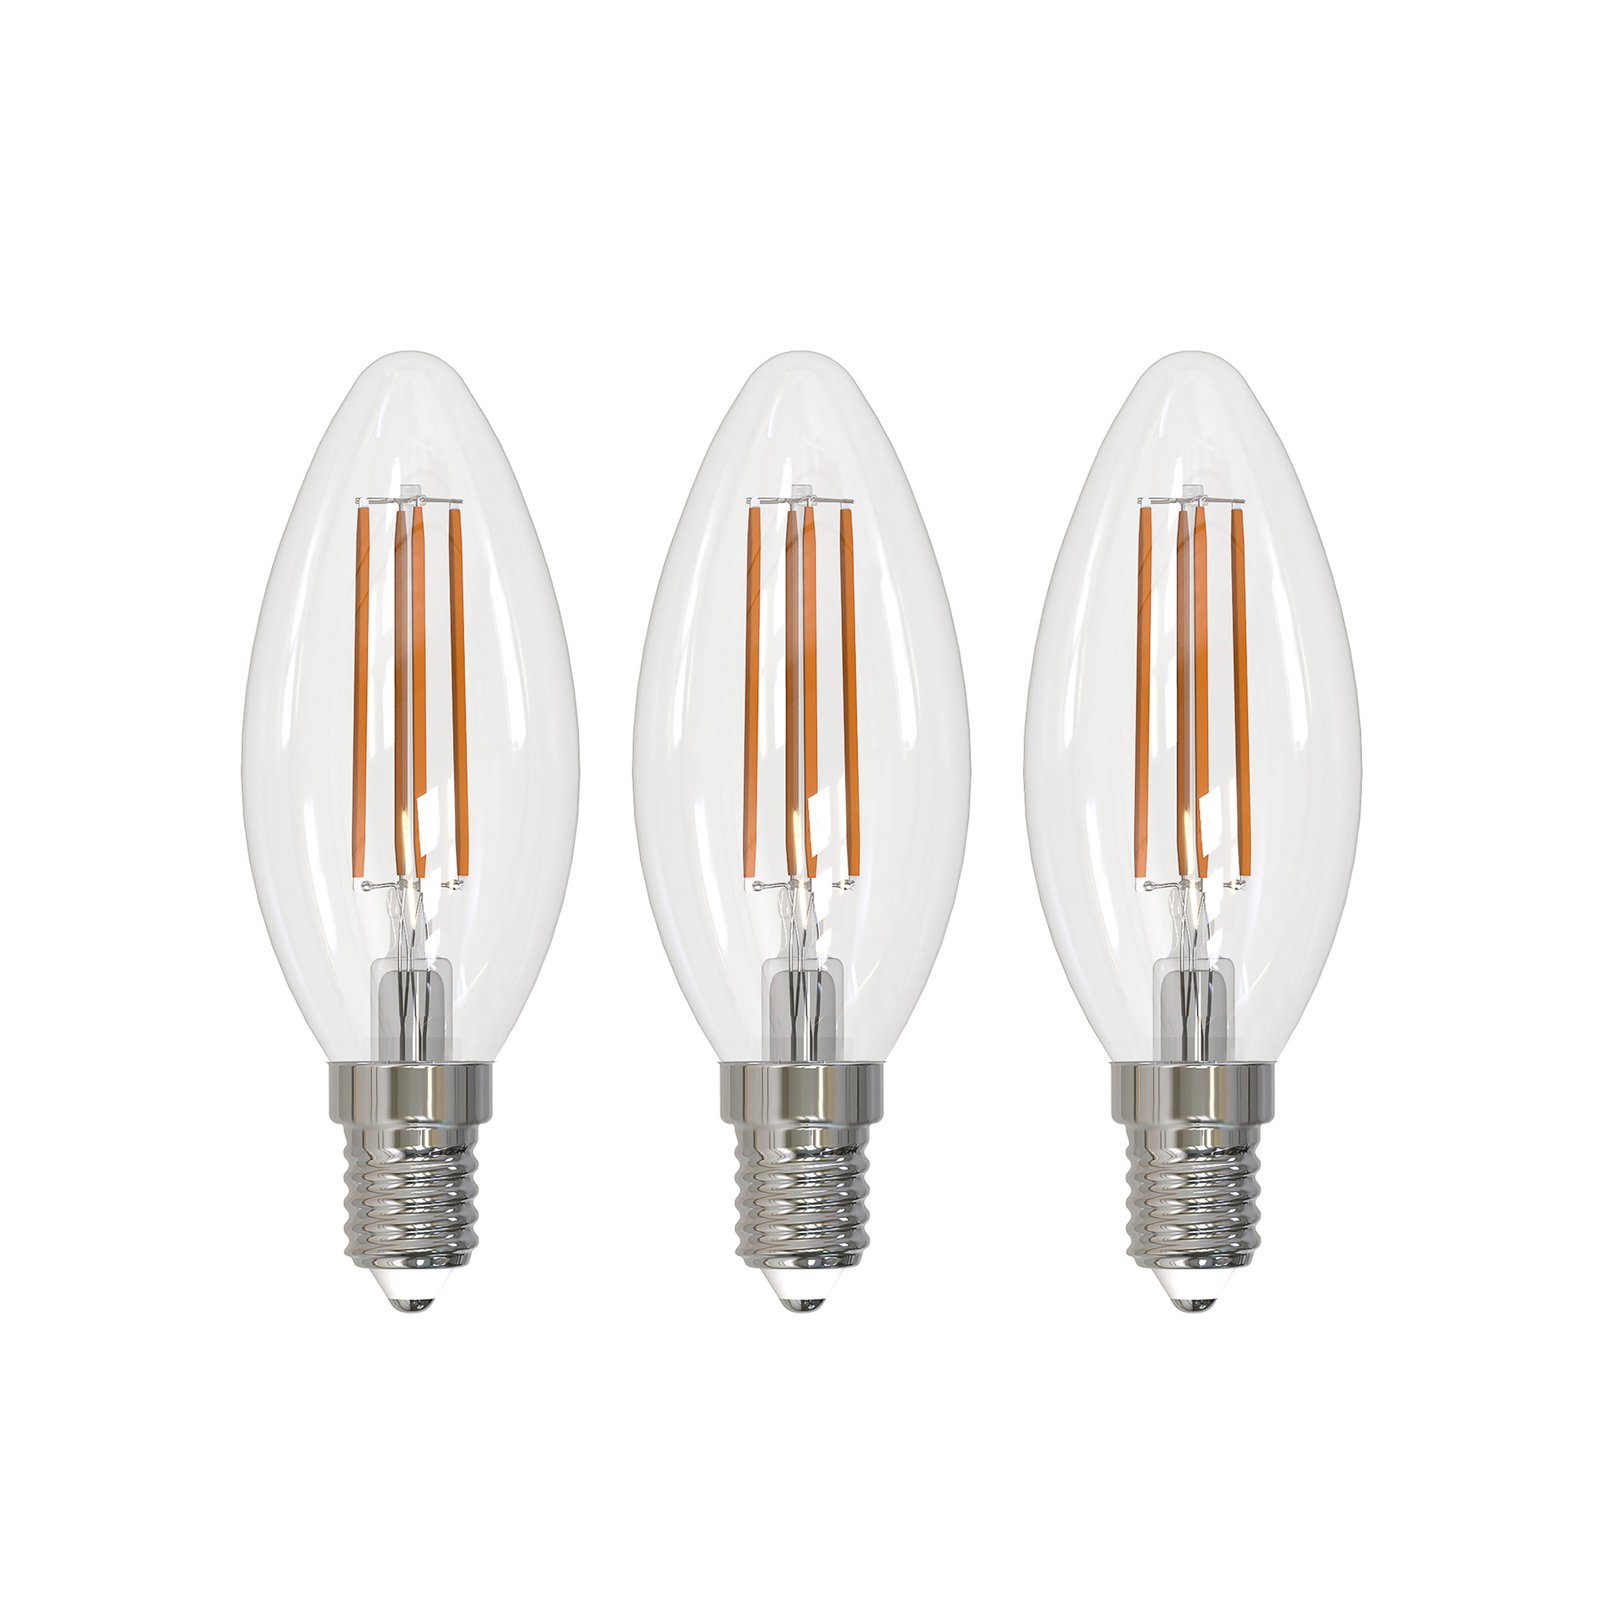 Arcchio LED žarulja filament E14 svijeća, set od 3 komada, 2700 K